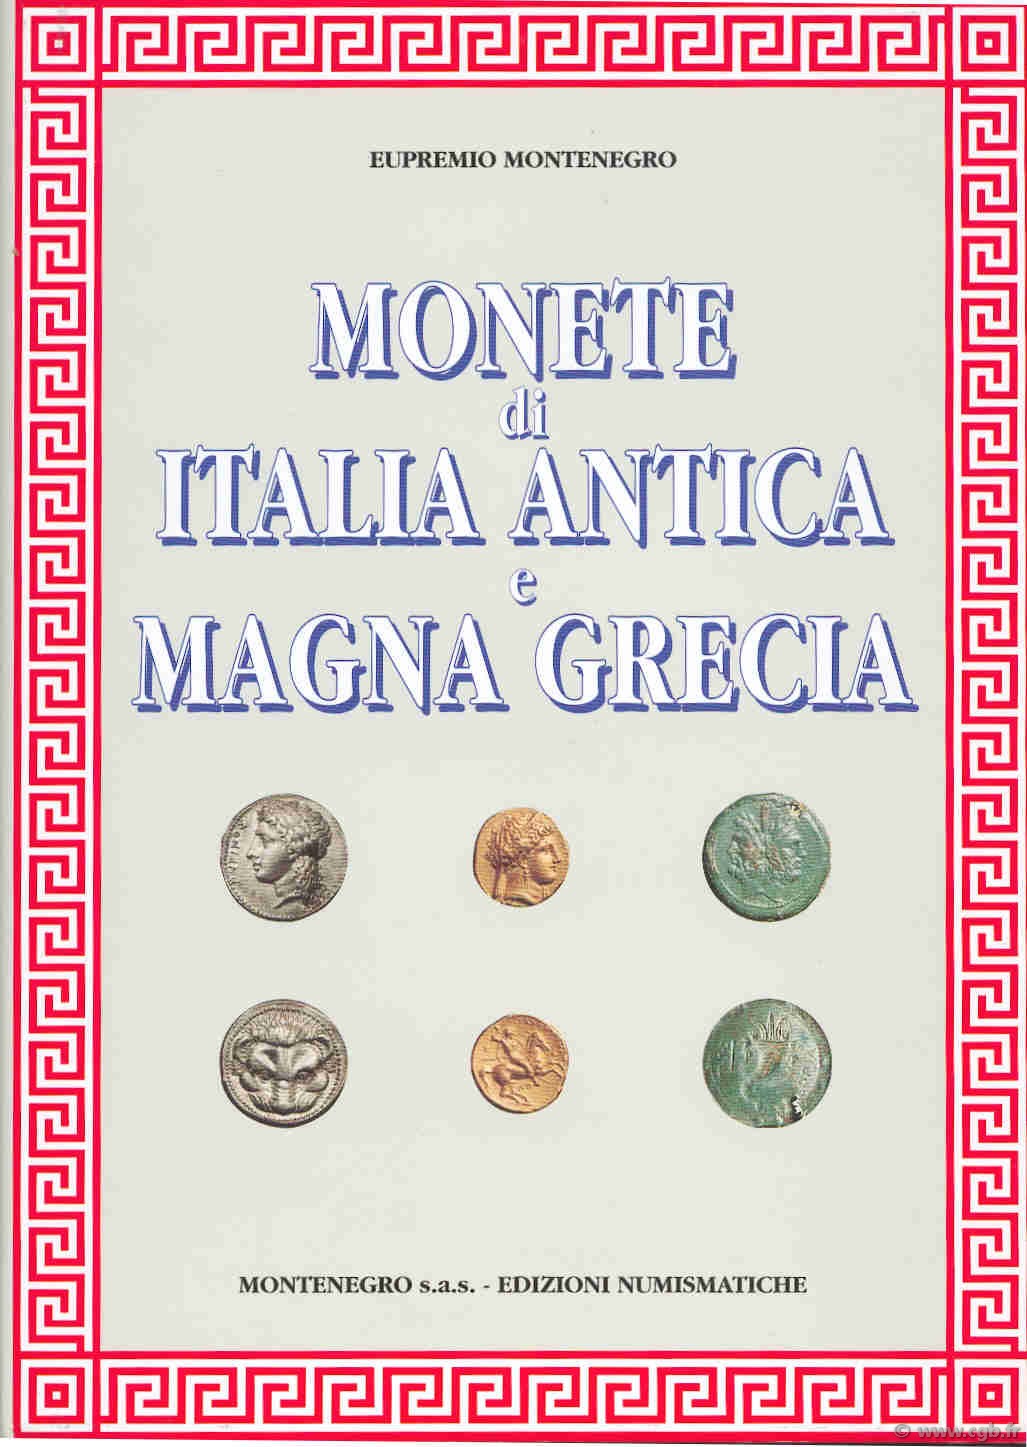 Monete di Italia Antica e Magna Grecia MONTENEGRO Eupremio